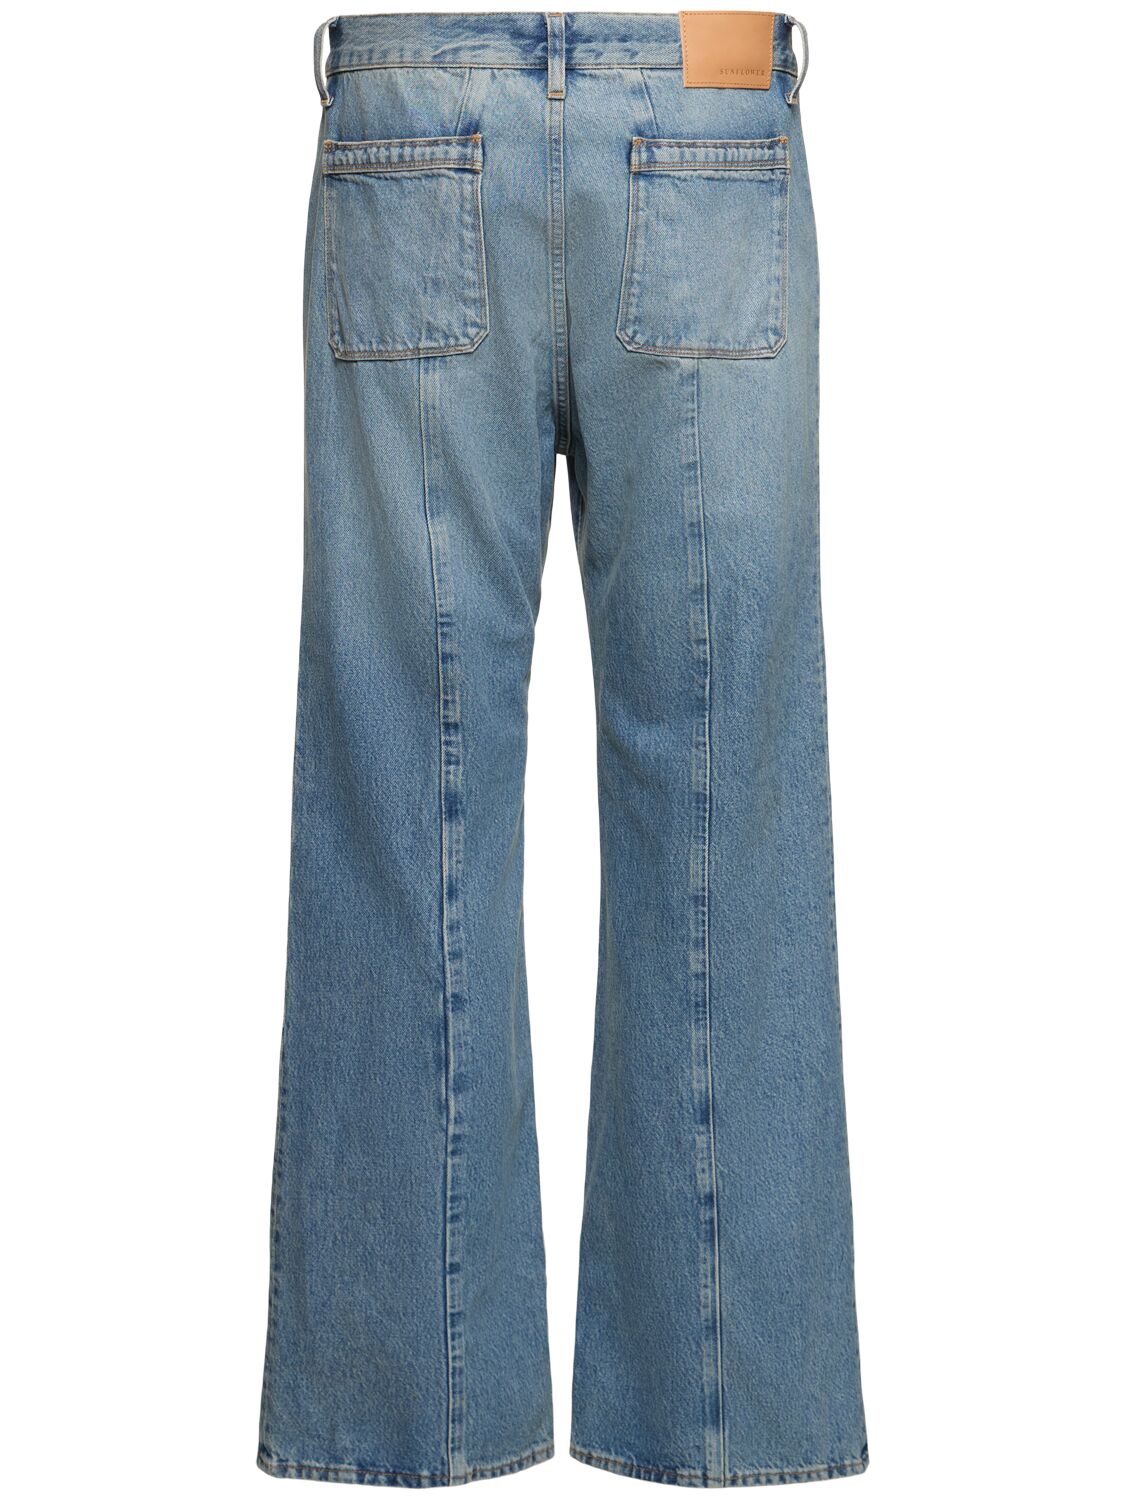 Shop Sunflower Flared Denim Jeans In Light Blue Vintage